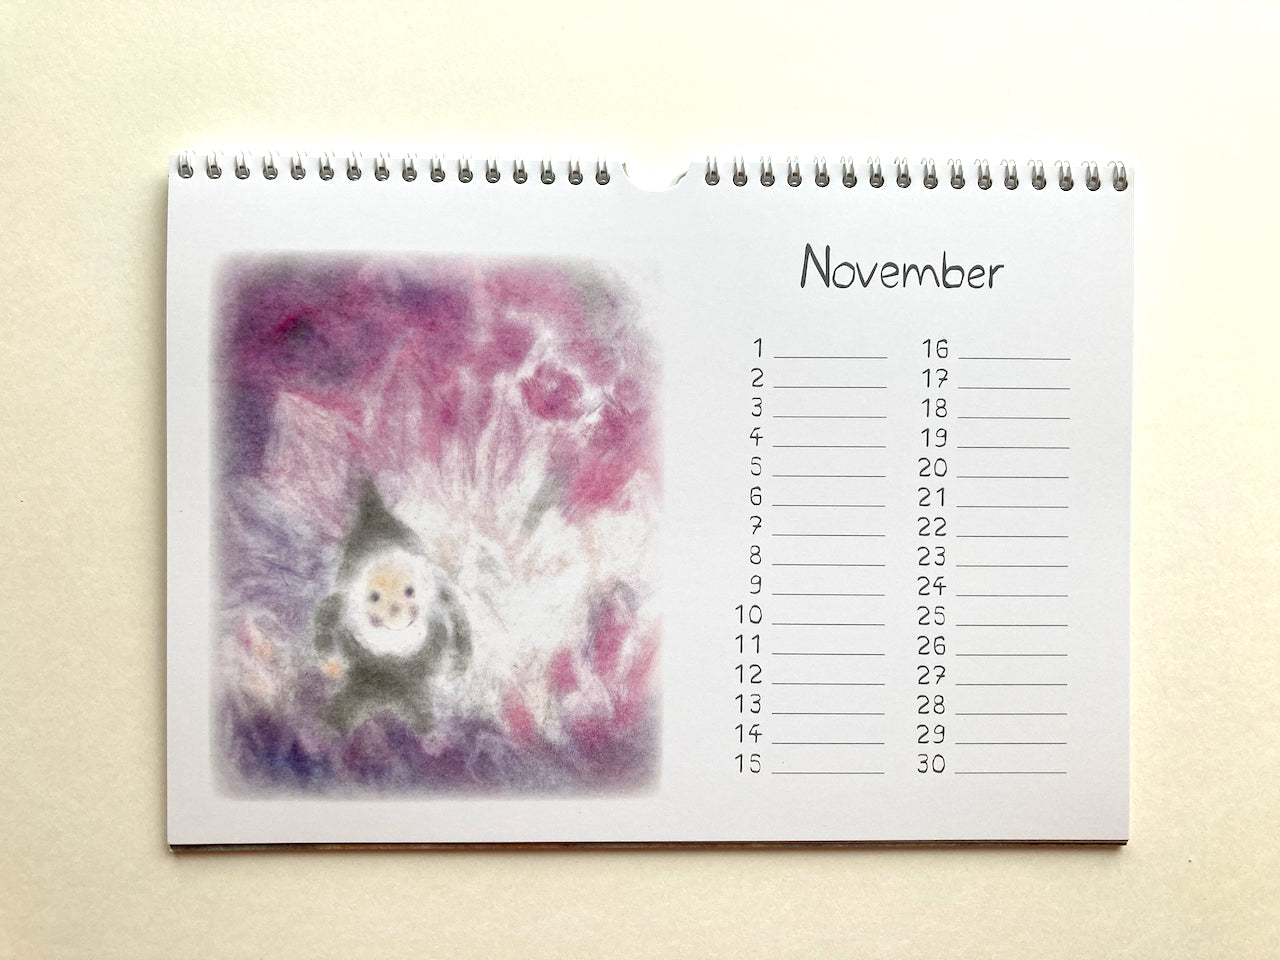 Immerwährender Zwergenkalender, November in Seccorell-Technik von Andrea Reiß